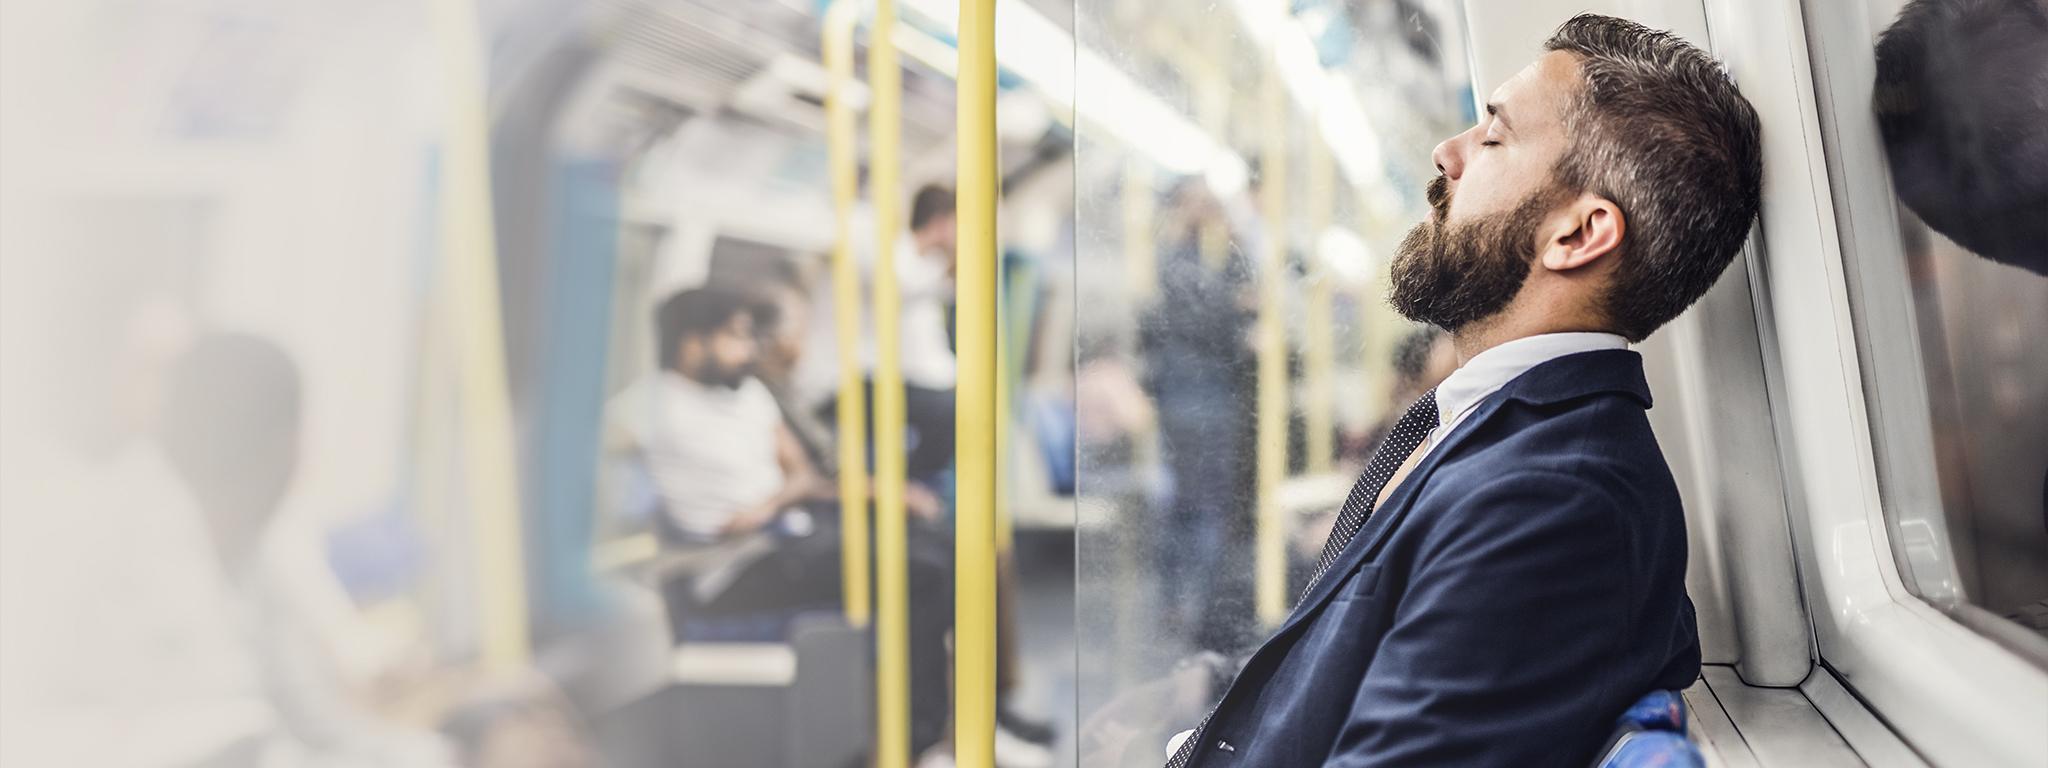 Śpiący biznesmen jadący do pracy londyńskim metrem